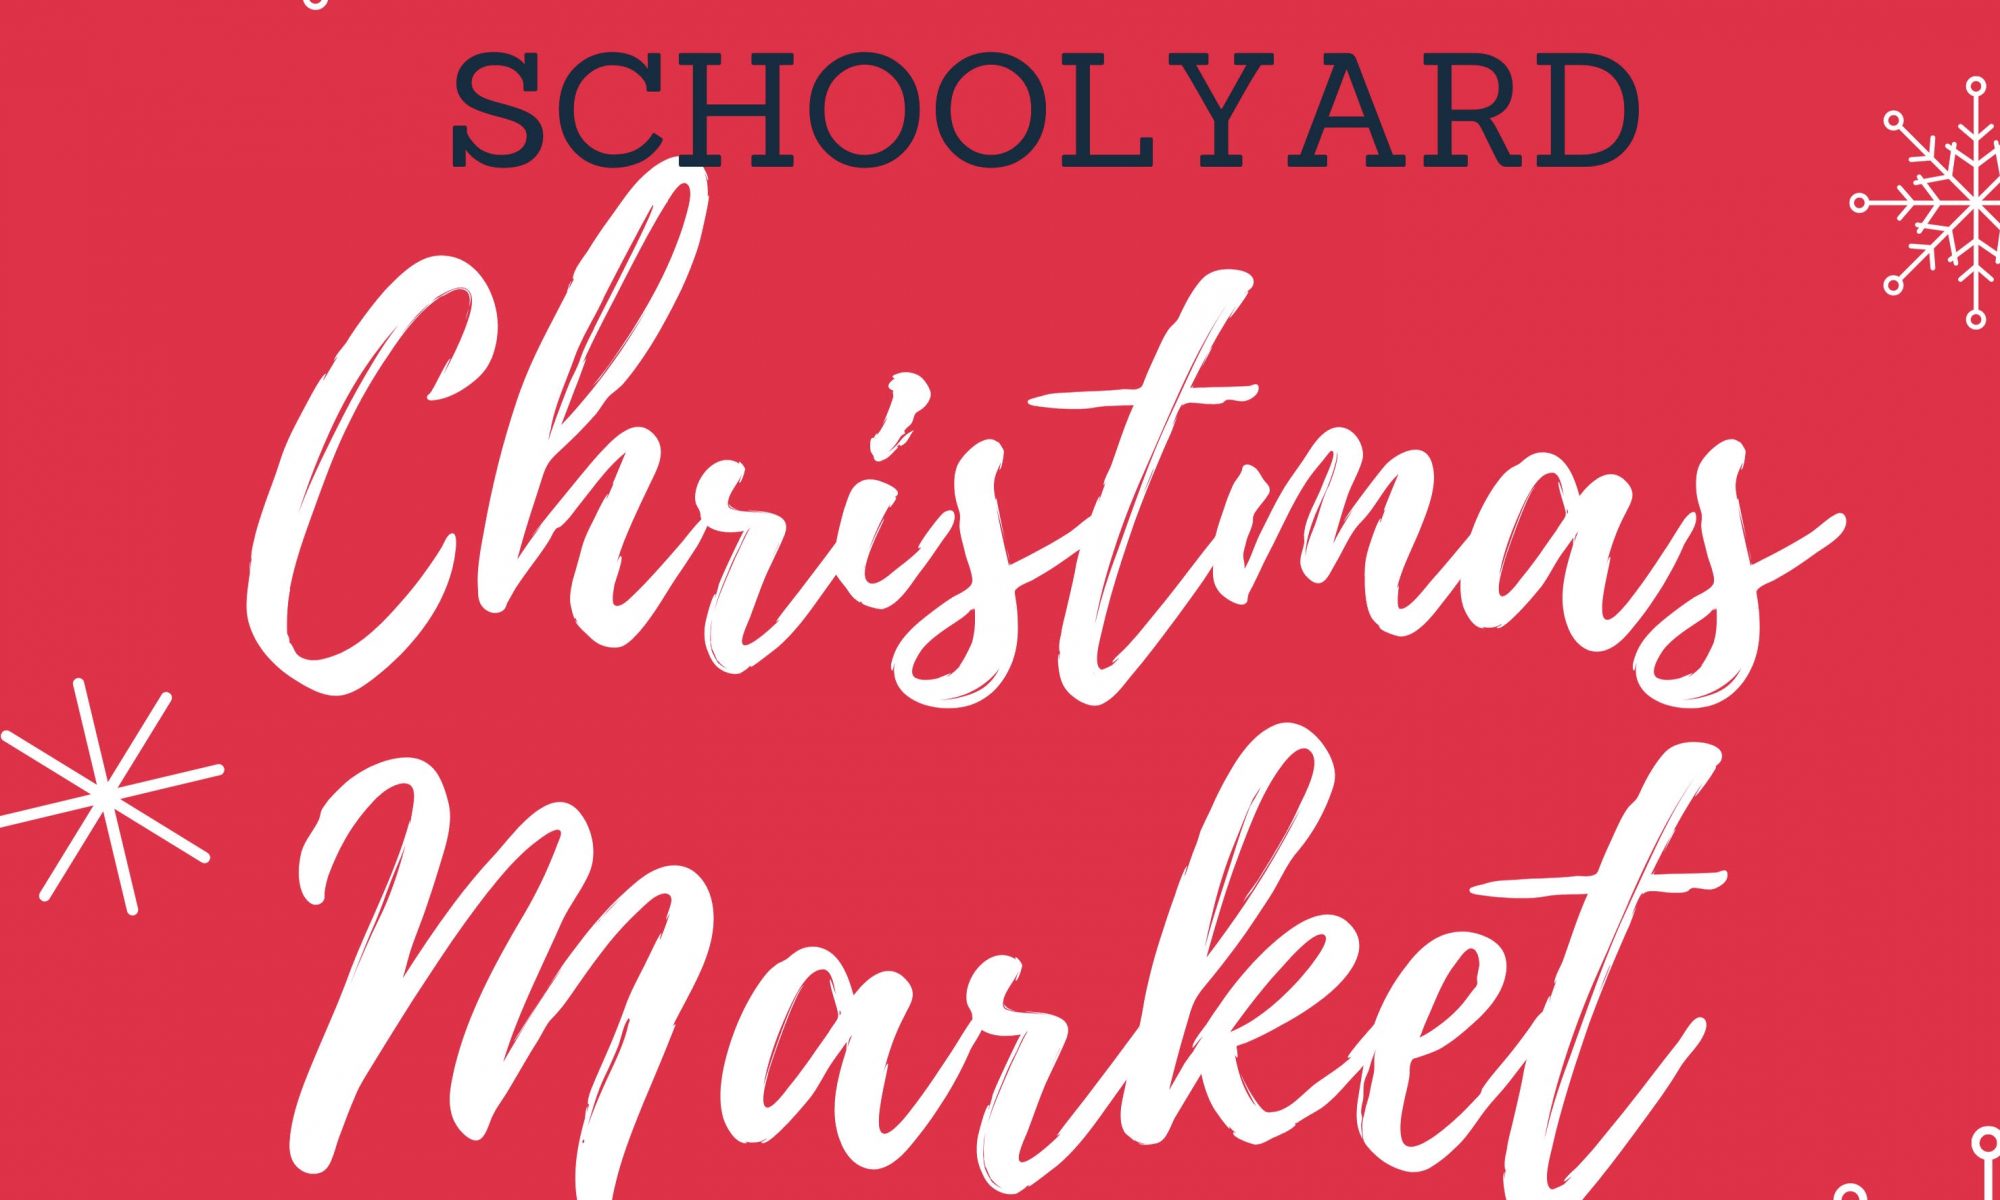 Berrima Schoolyard Christmas Markets